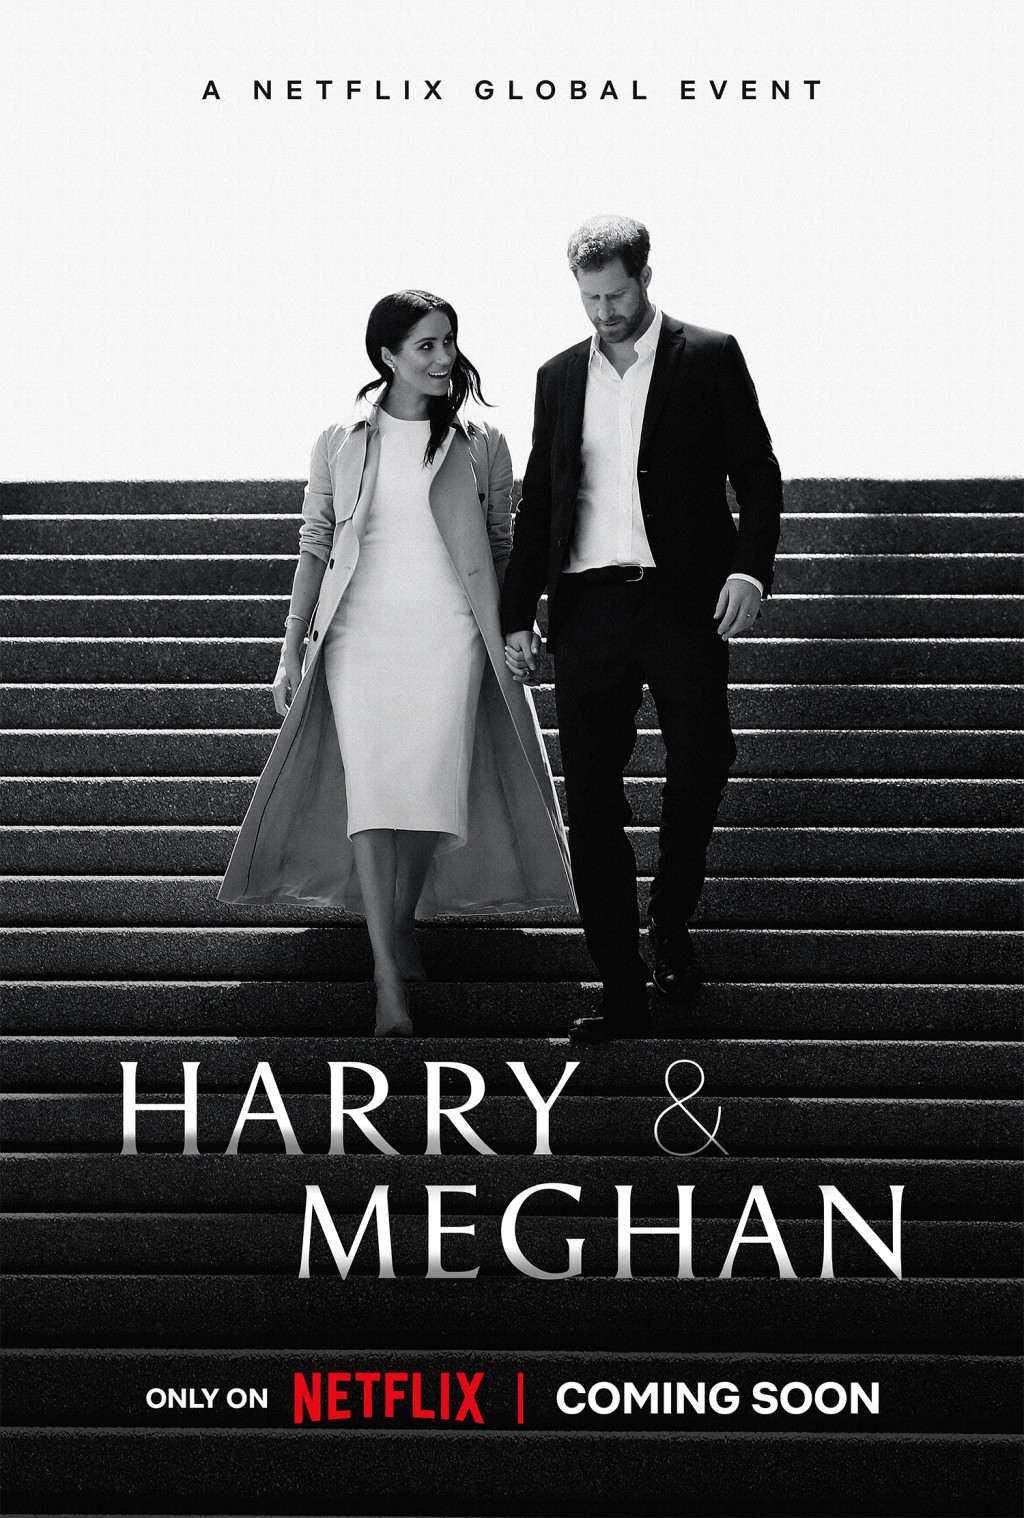 哈里与梅根接受Netflix专访，屡有抨击皇室的论调。